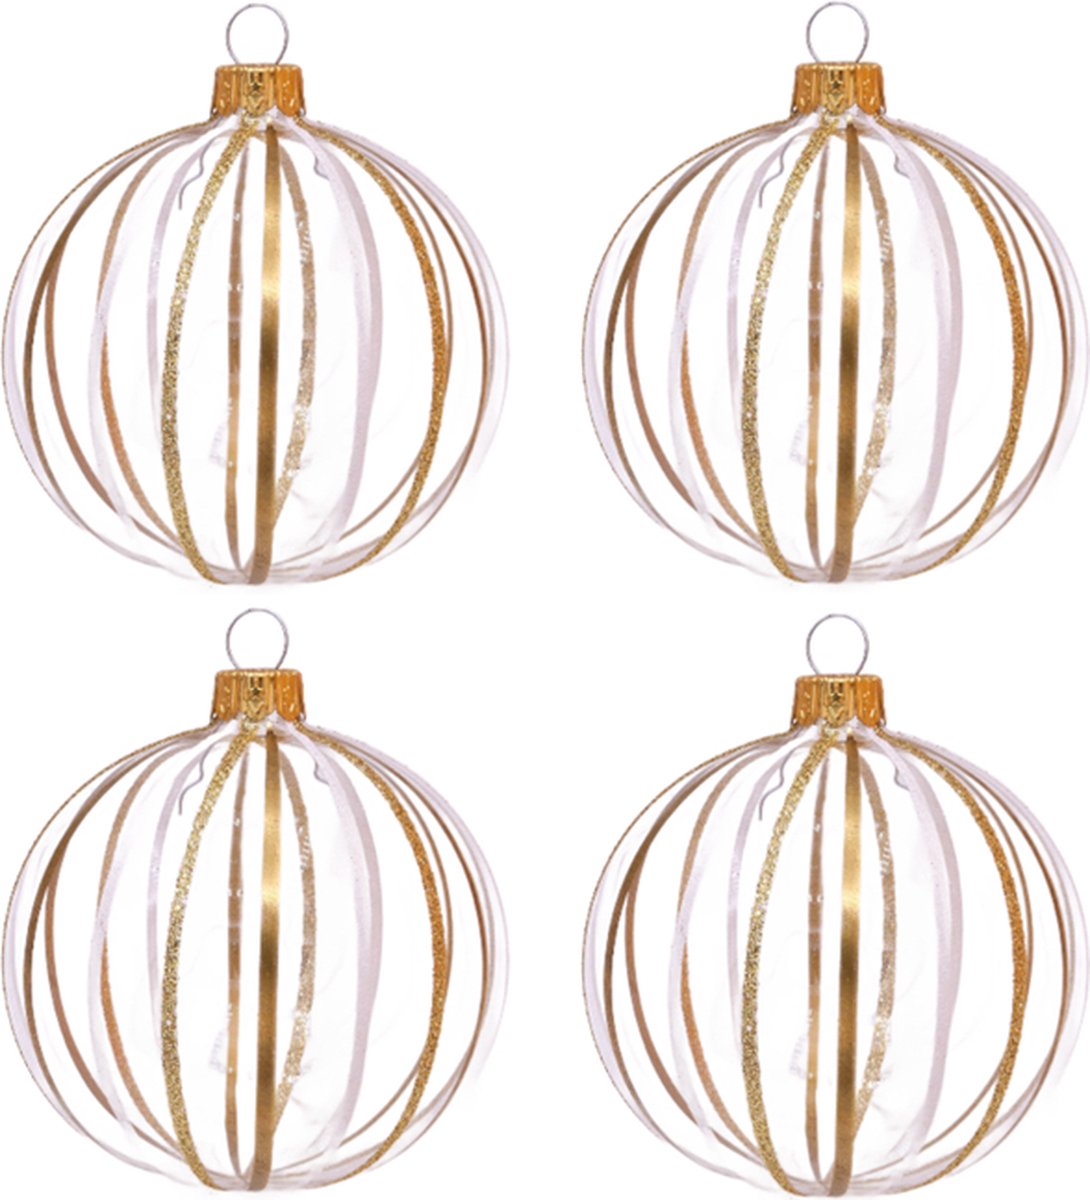 Chique Transparante Kerstballen met Gouden Strepen - set van 4 glazen kerstballen van 8 cm